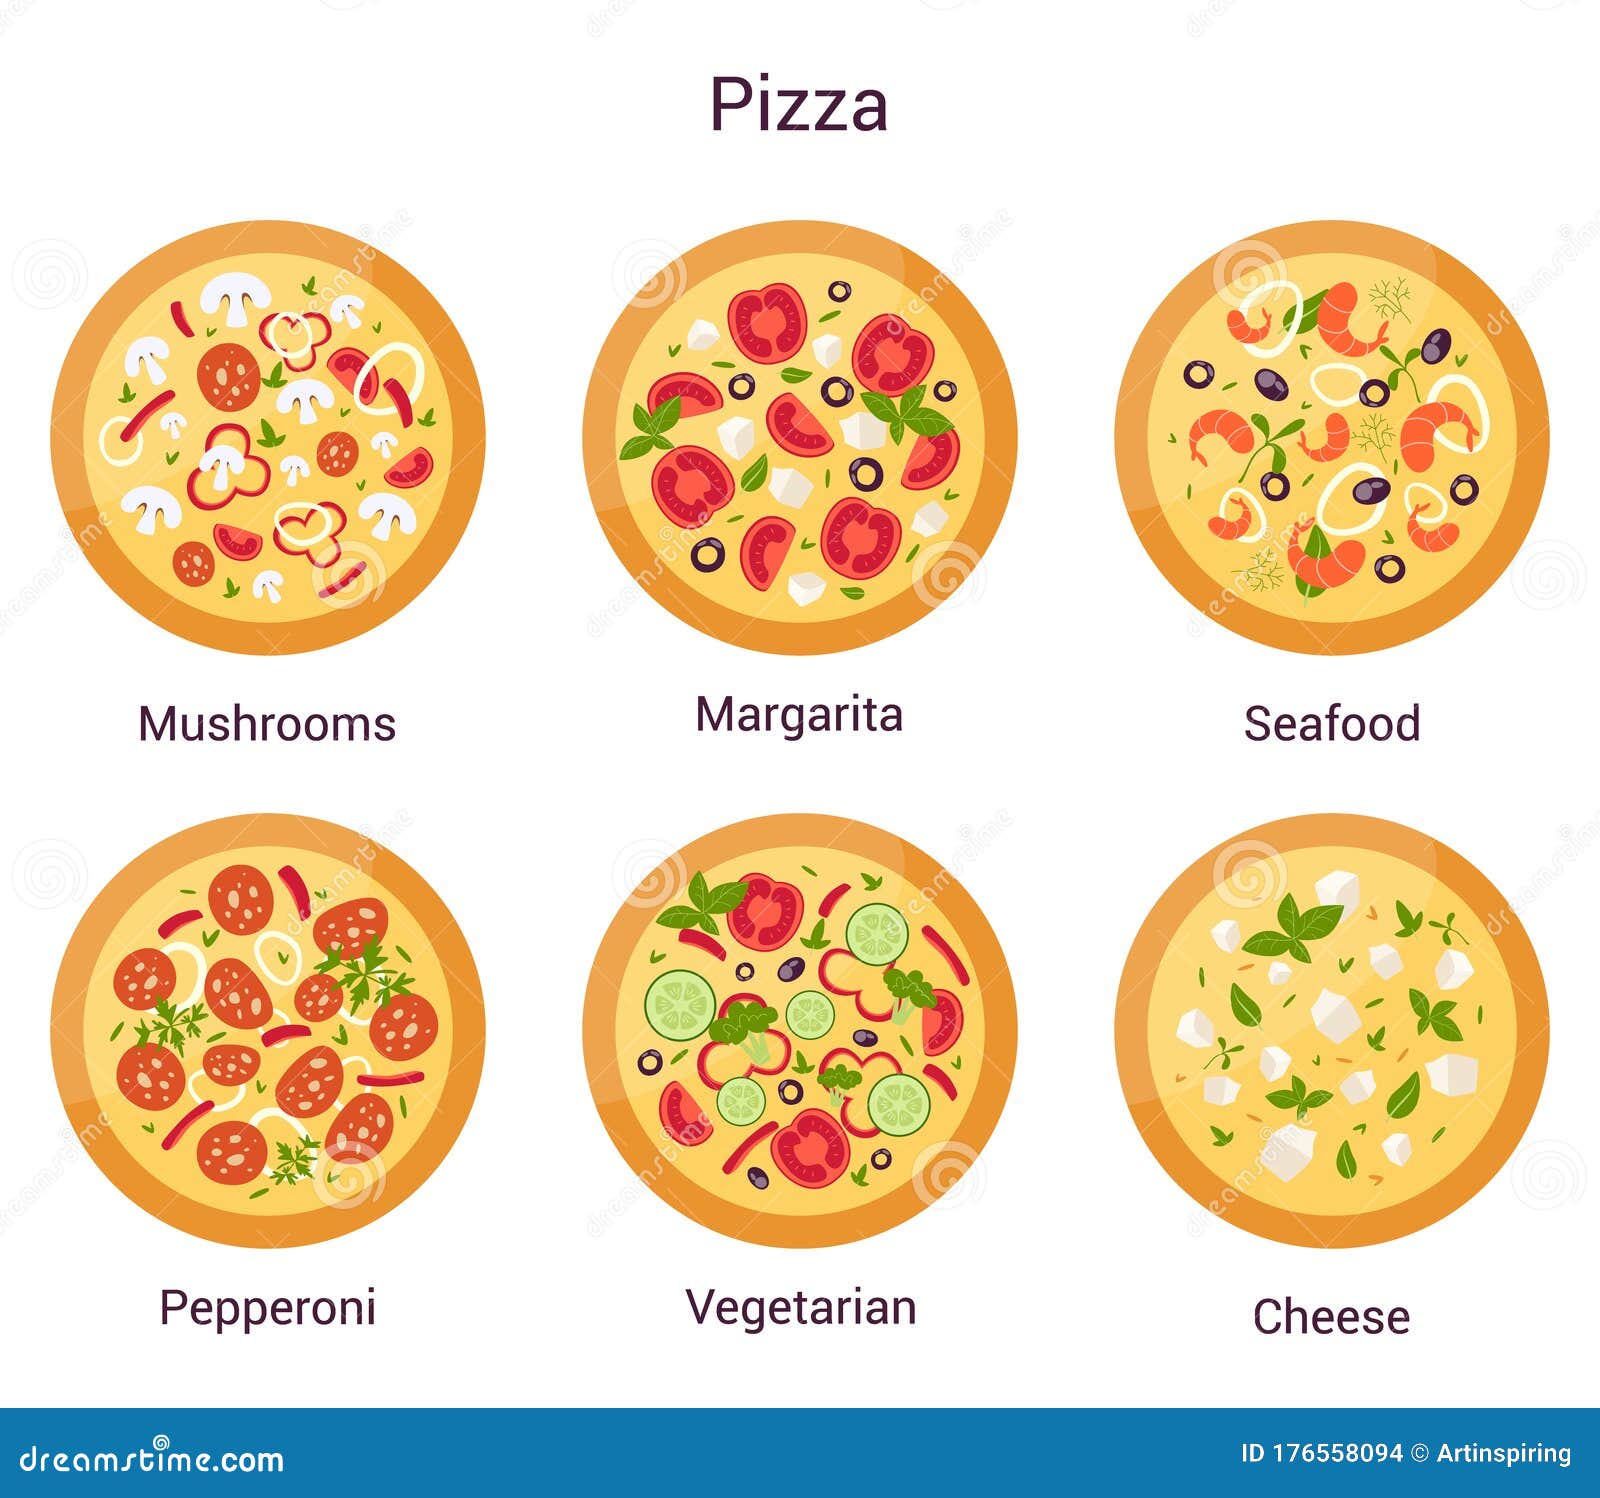 тех карта на пиццу пепперони фото 9